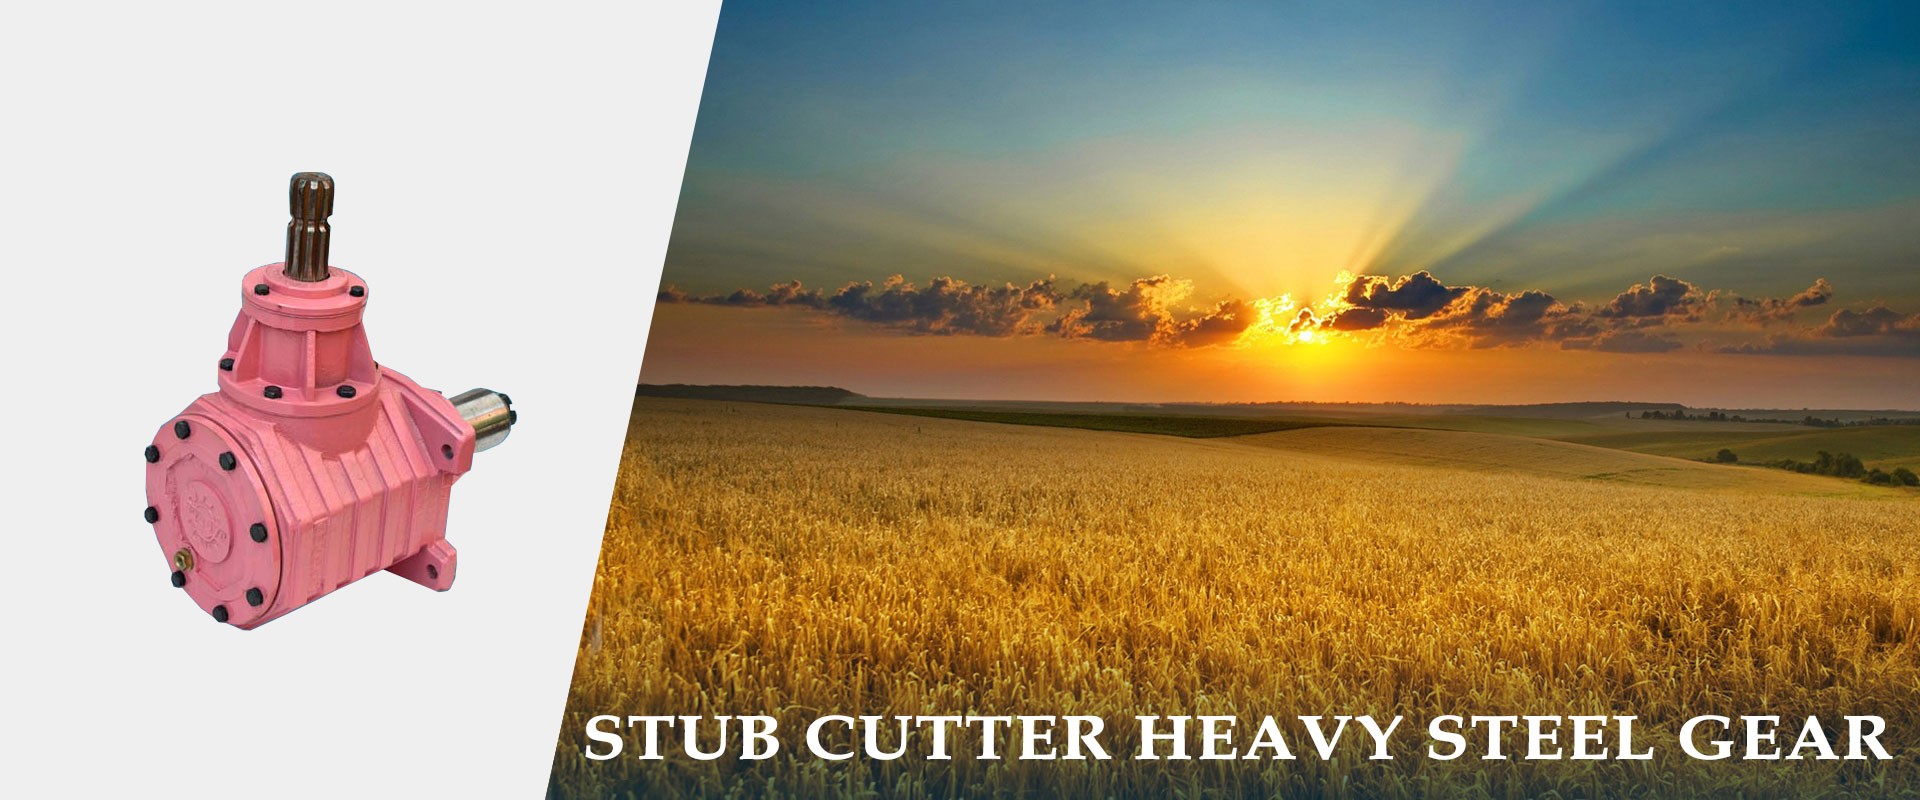 Stub Cutter Heavy Steel Gear Slide